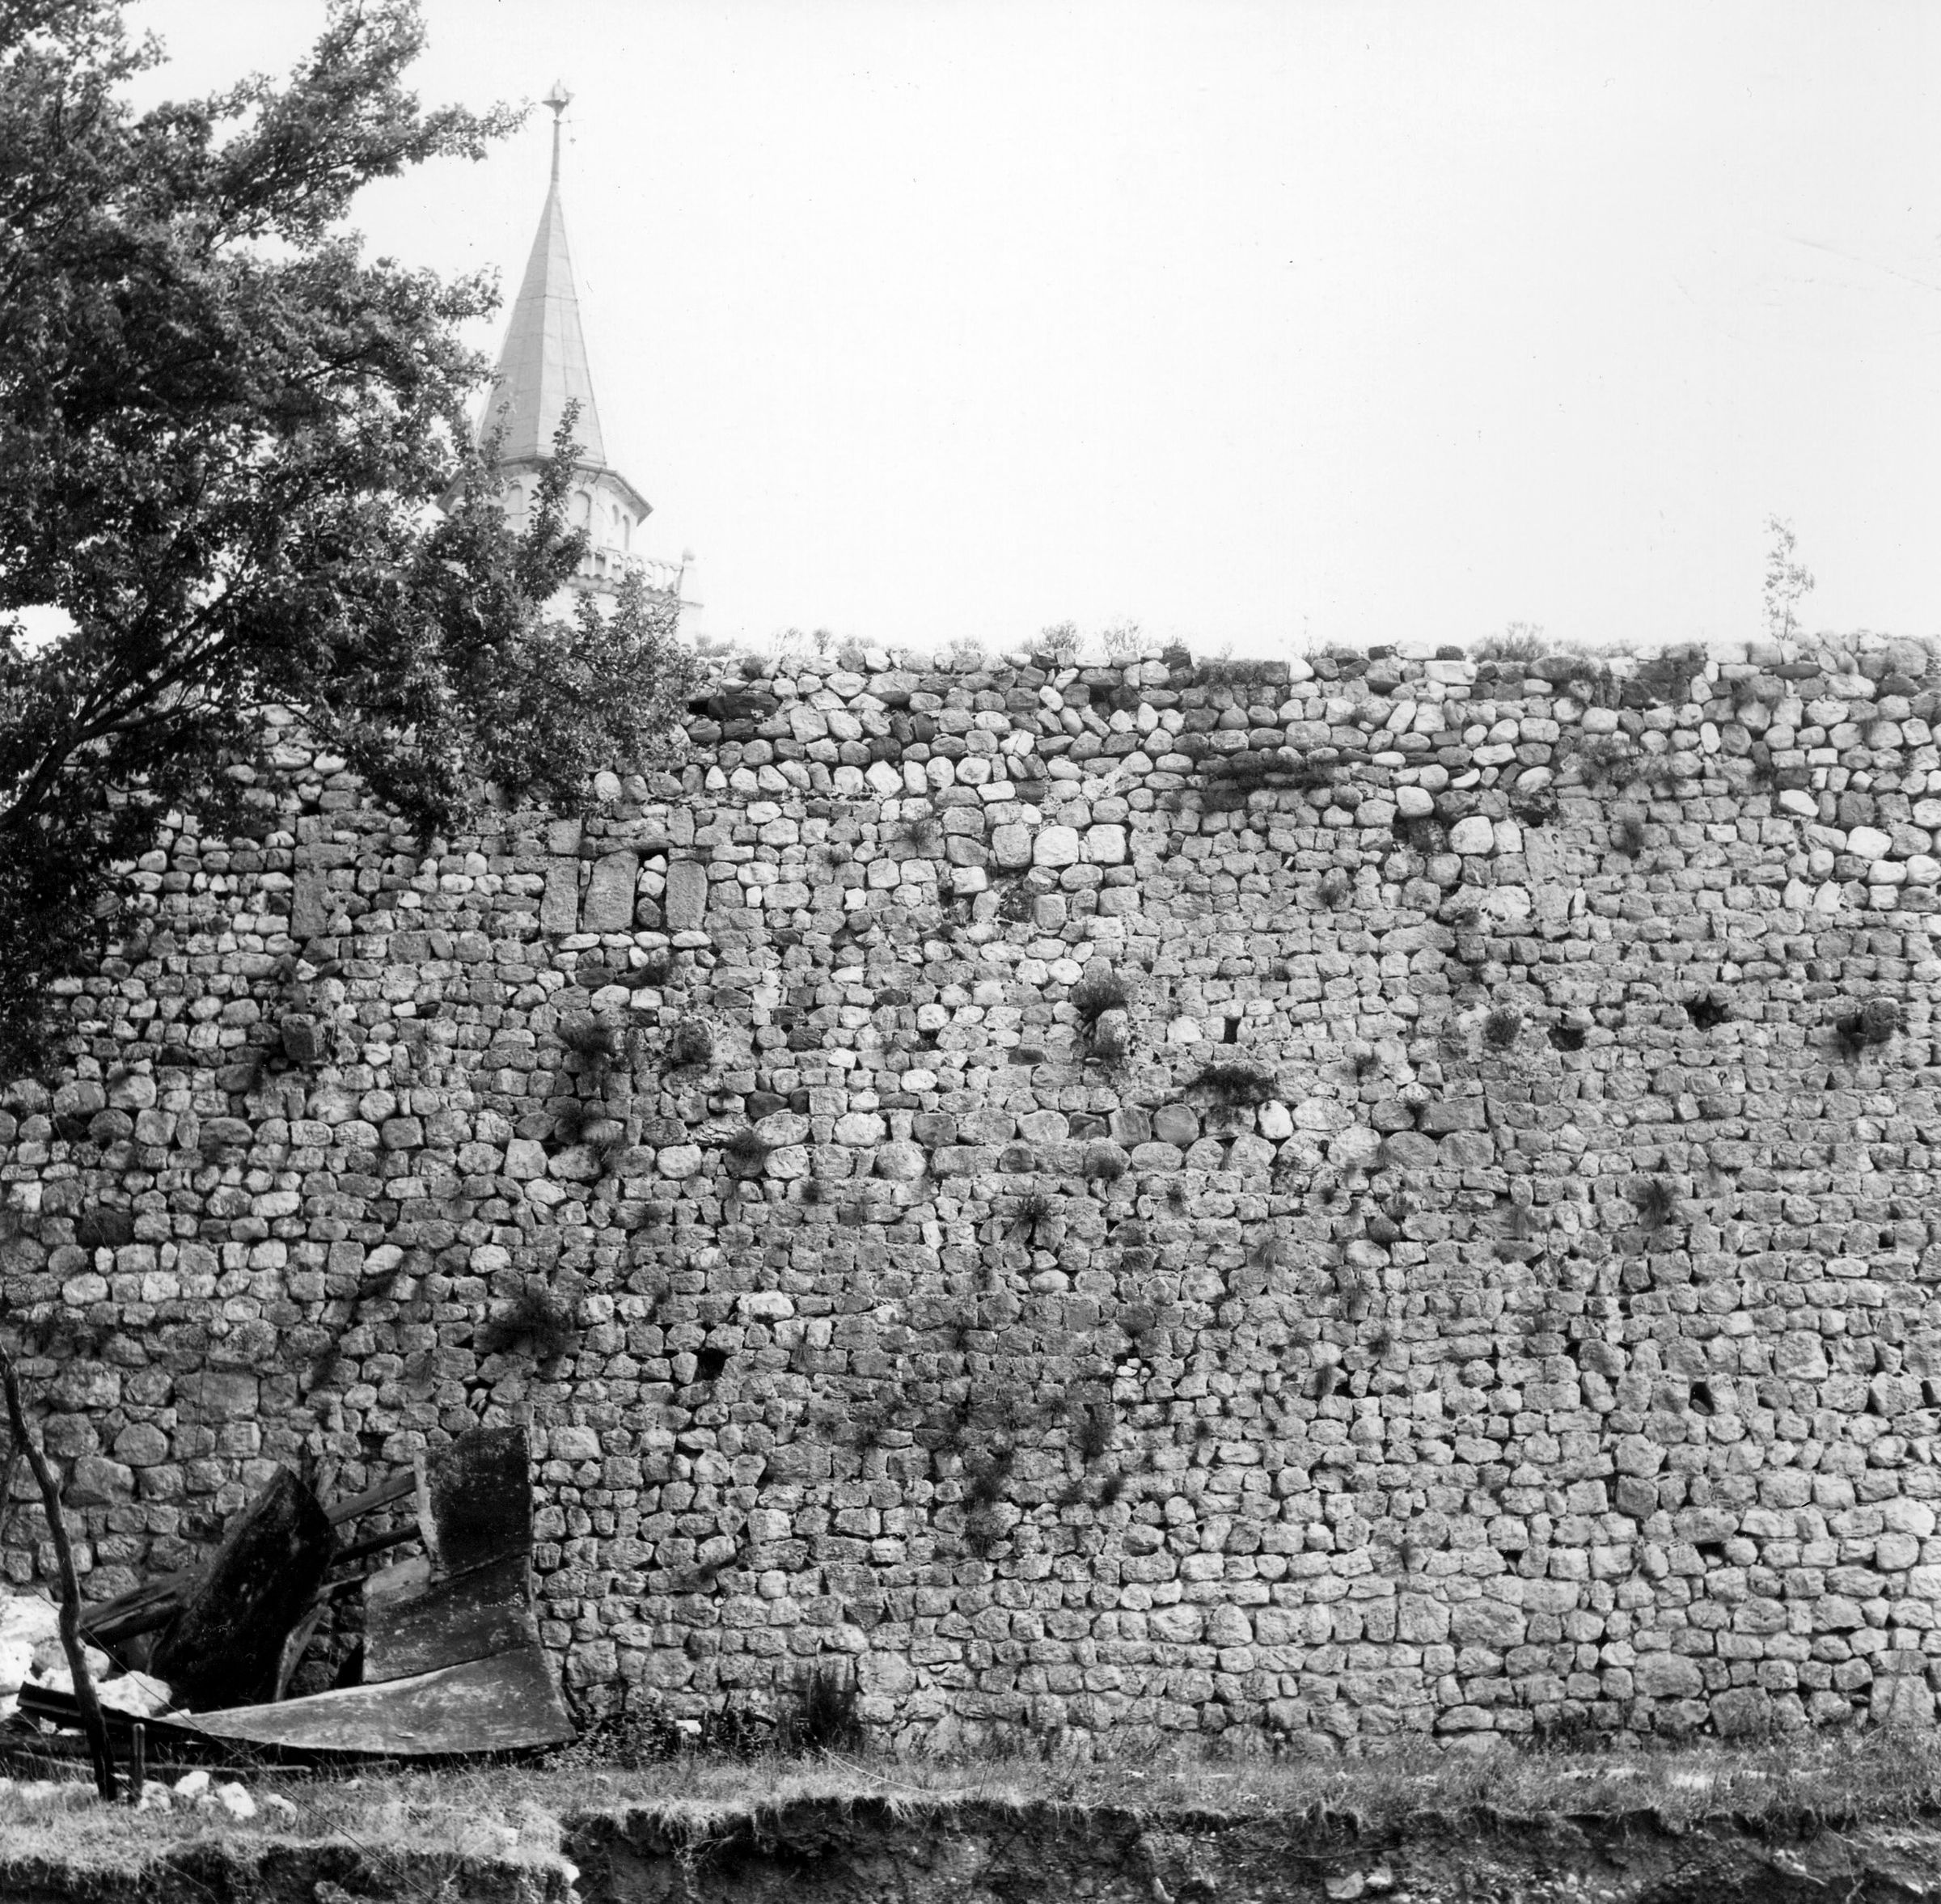 Fotografo non identificato, Venzone - Terremoto, cinta muraria, vista di dettaglio, esterno, 1976, gelatina ai sali d'argento/pellicola (acetati), 6x6cm, N032516